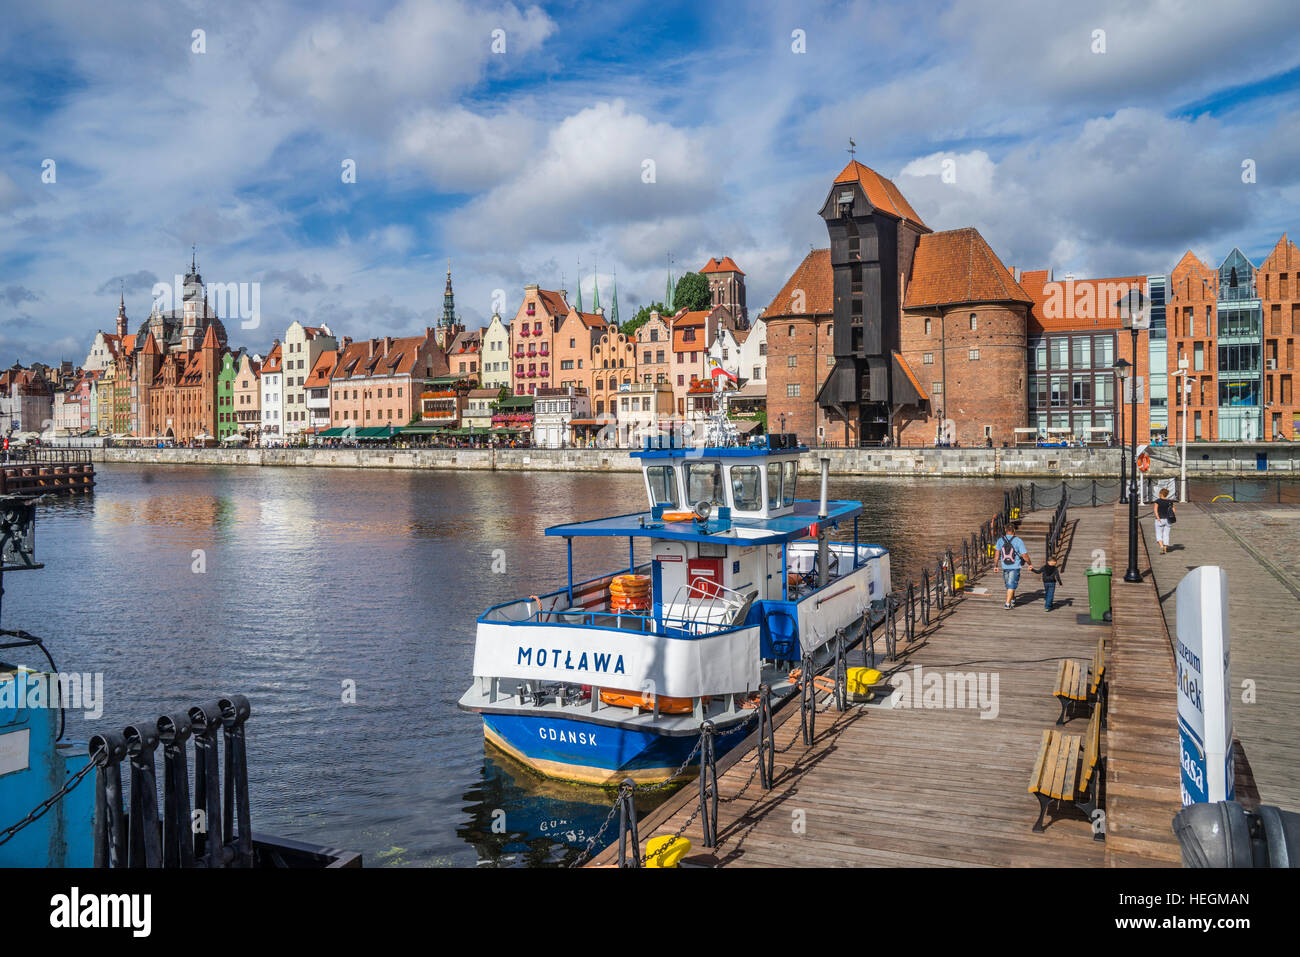 La Pologne, la Poméranie, Gdansk (Dantzig), ferry à l'Île Olowianka Motlawa (Bleihof) avec vue sur la grue du port médiéval au front de mer Motlawa Banque D'Images